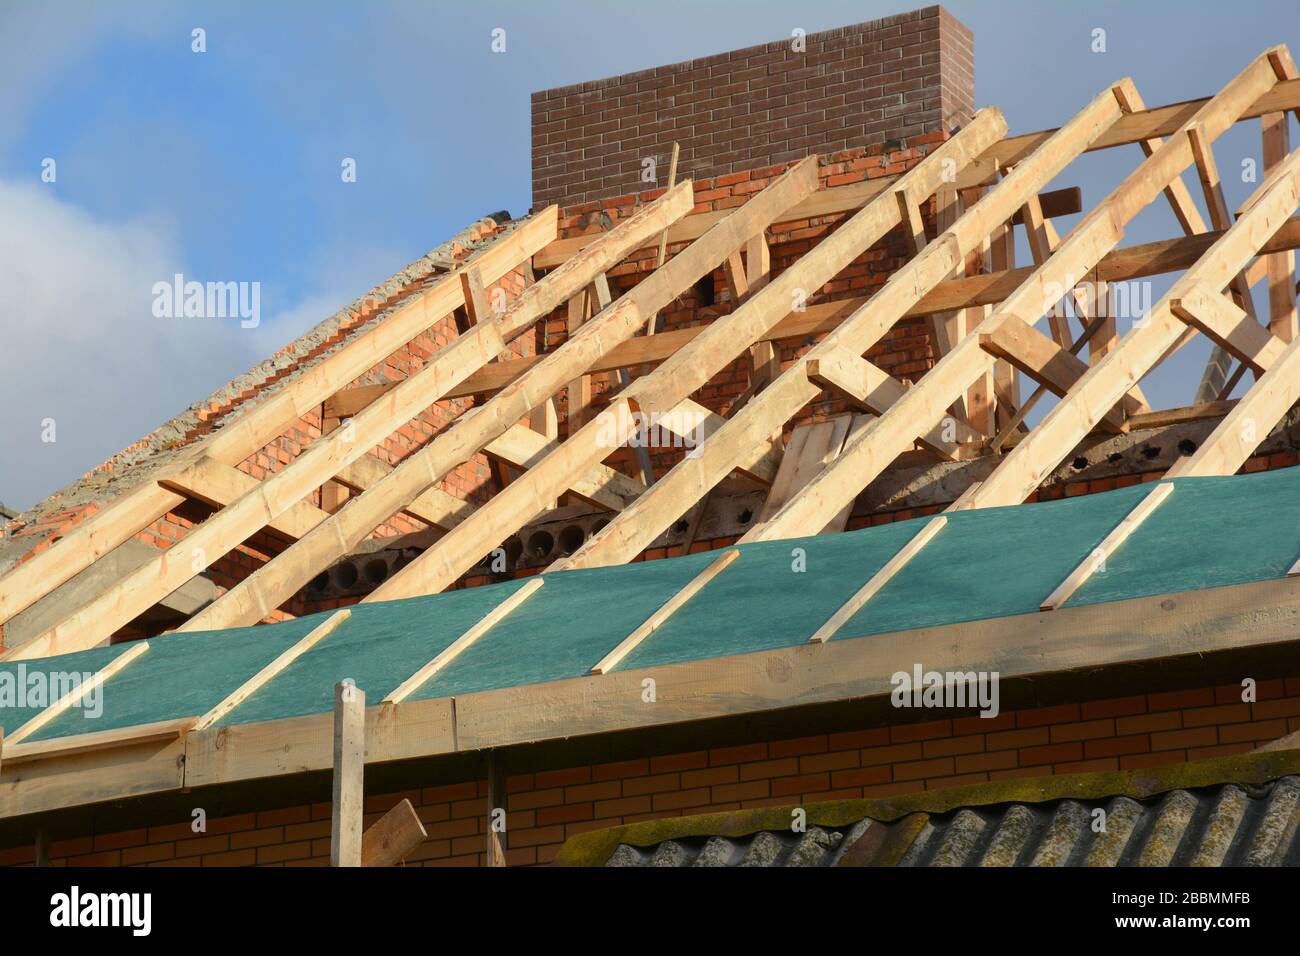 Holzrahmenkonstruktion auf dem Dach. Unvollständige Dachdachkonstruktion, Trassen, Dampfsperre, Holzbalken, Traufen, Holz. Stockfoto